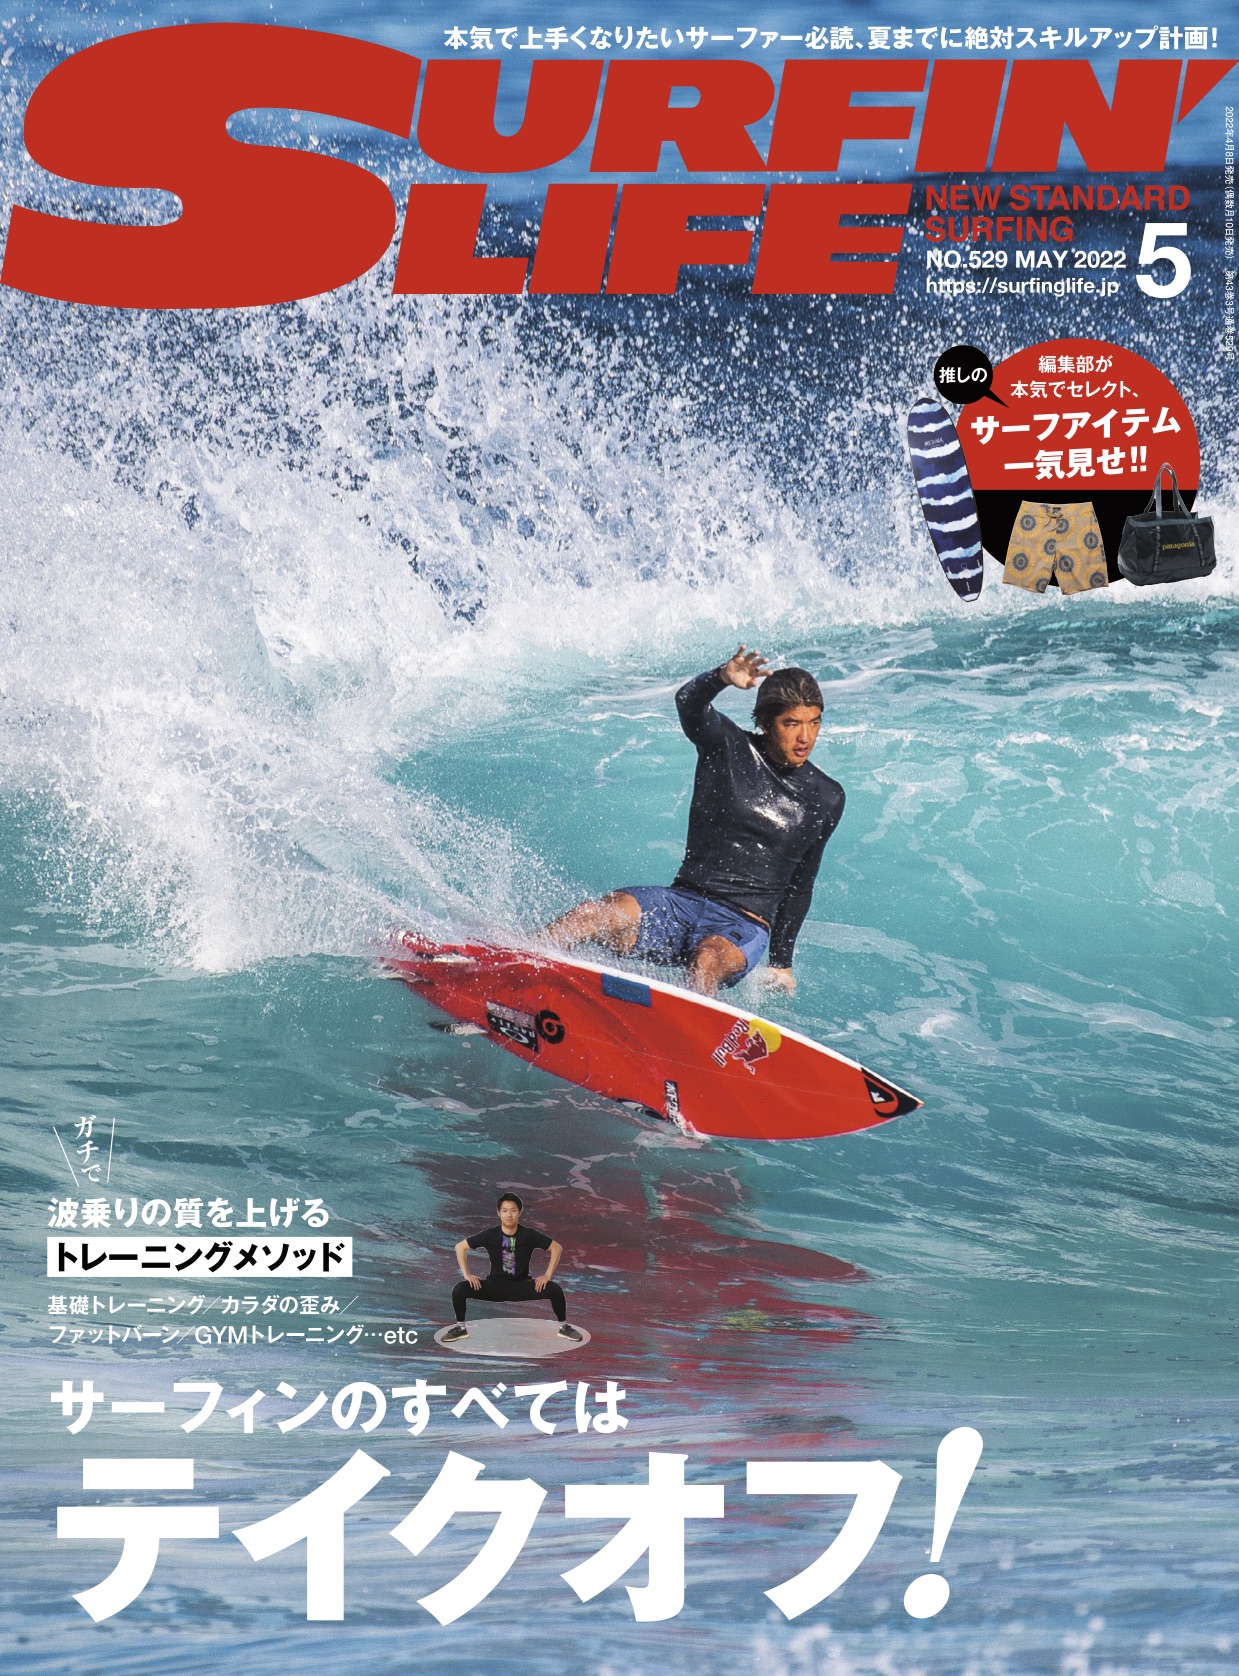 2022年4/8日発売 サーフィンライフ2022年5月号巻頭特集はハウトゥ「サーフィンのすべてはテイクオフ! 」